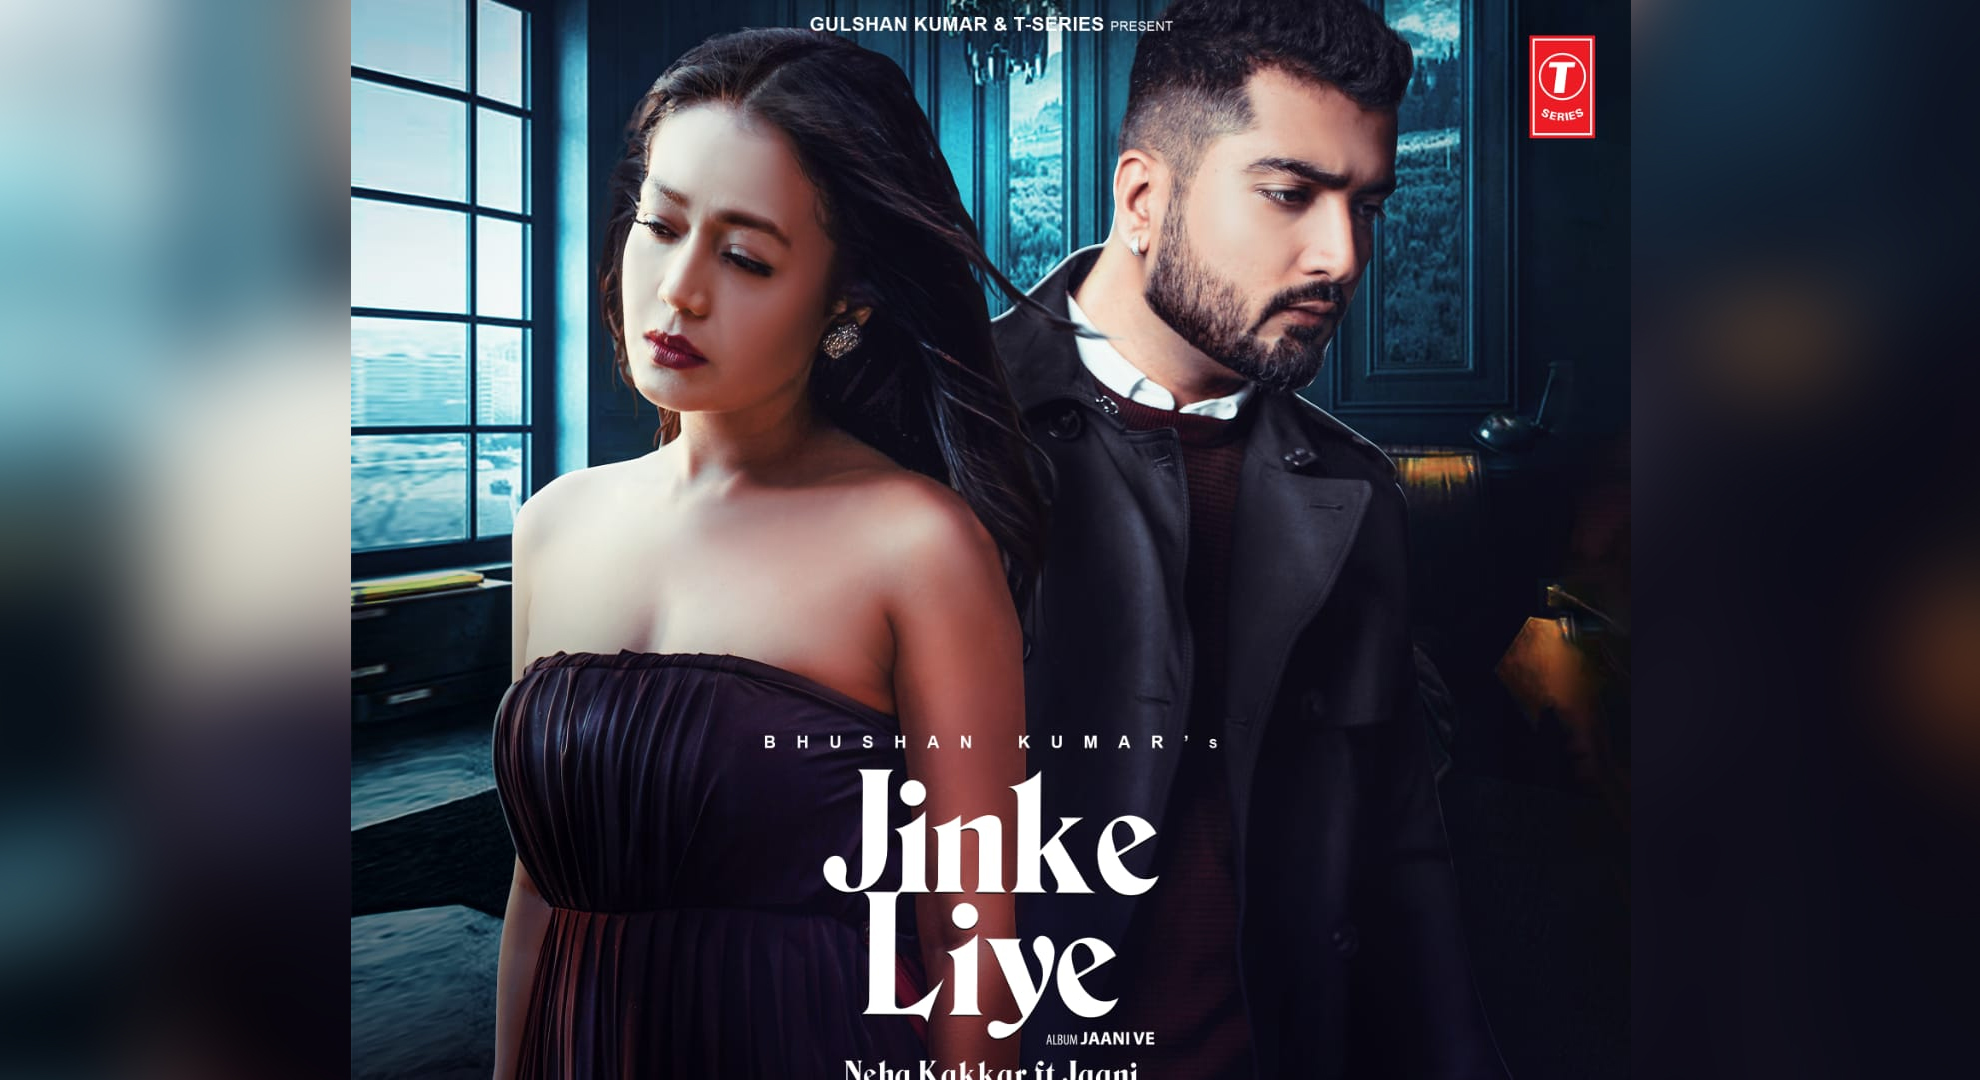 Neha Kakkar and Jaani’s next – a heartbreak anthem Jinke Liye Out now on T-Series’ YouTube channel